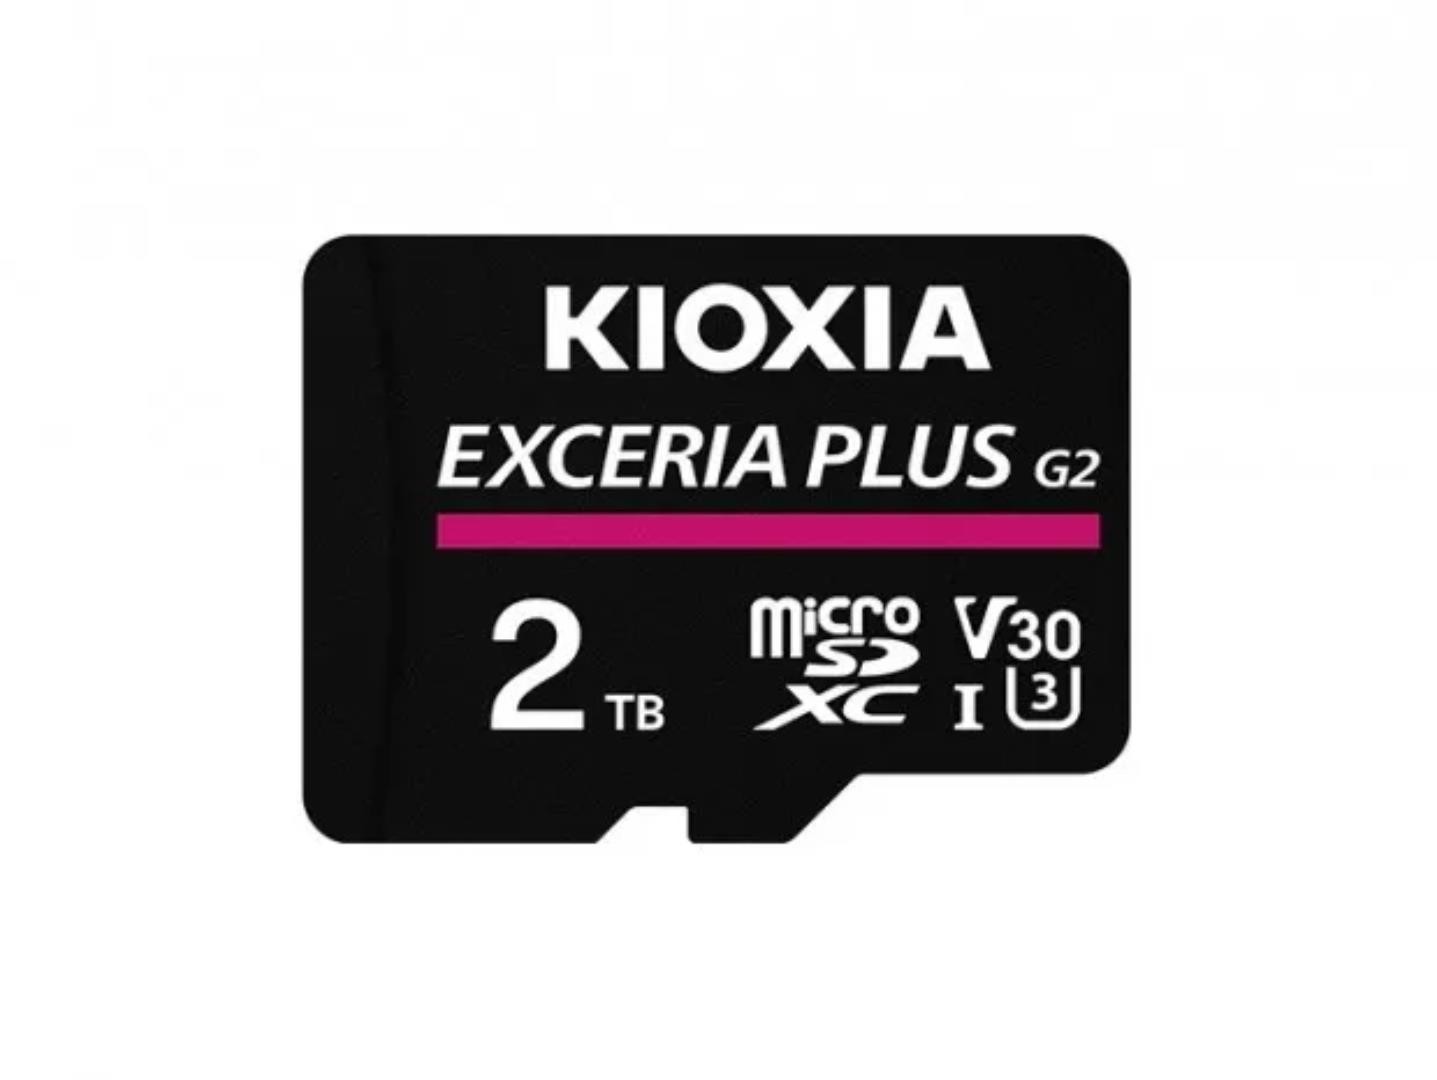 Karta pamięci, o której marzysz. KIOXIA pokazała nowy standard microSDXC